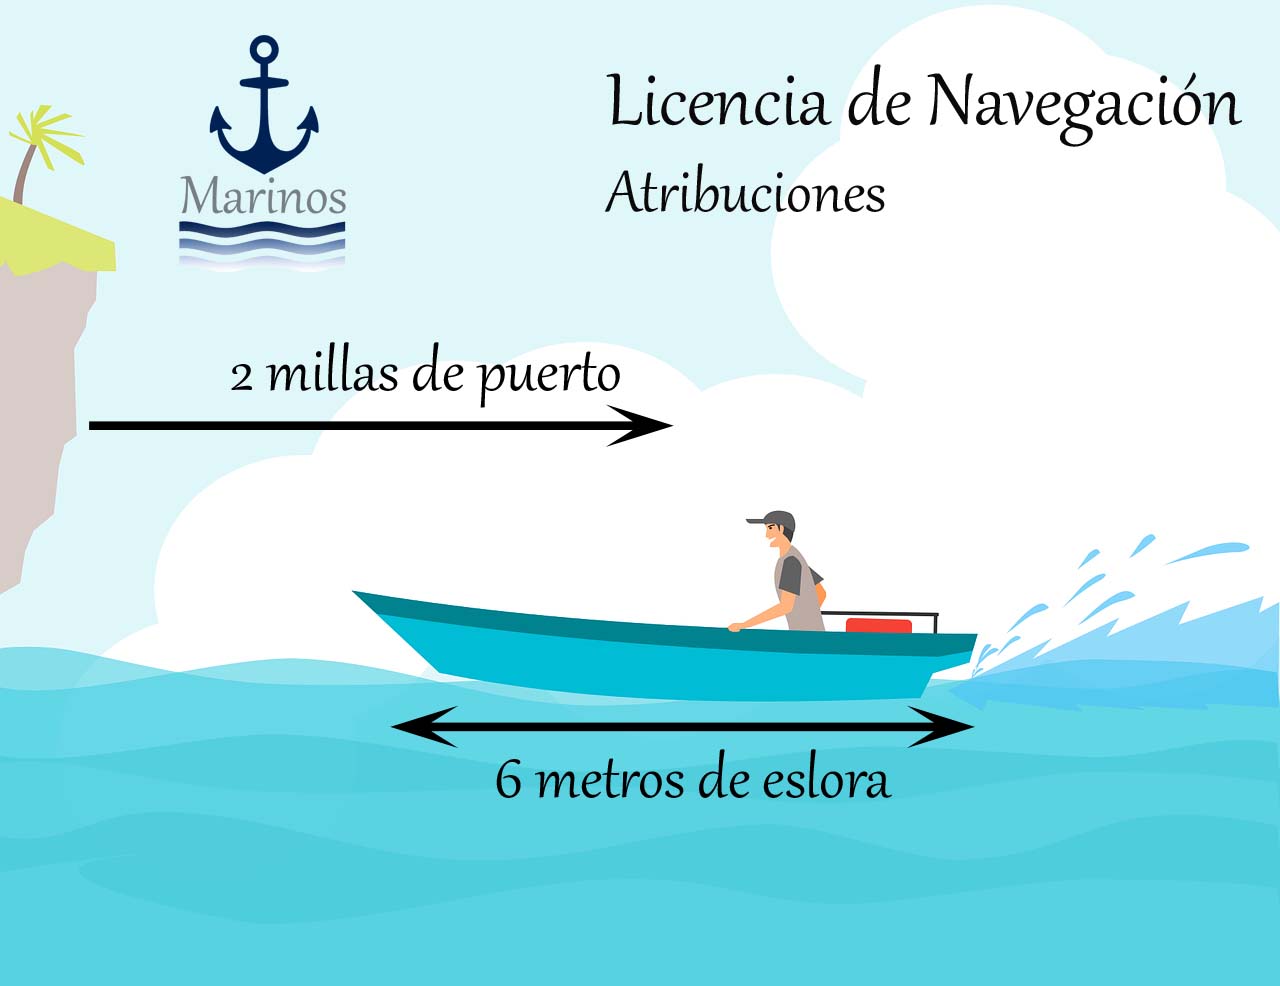 Atribuciones de la Licencia de Navegación